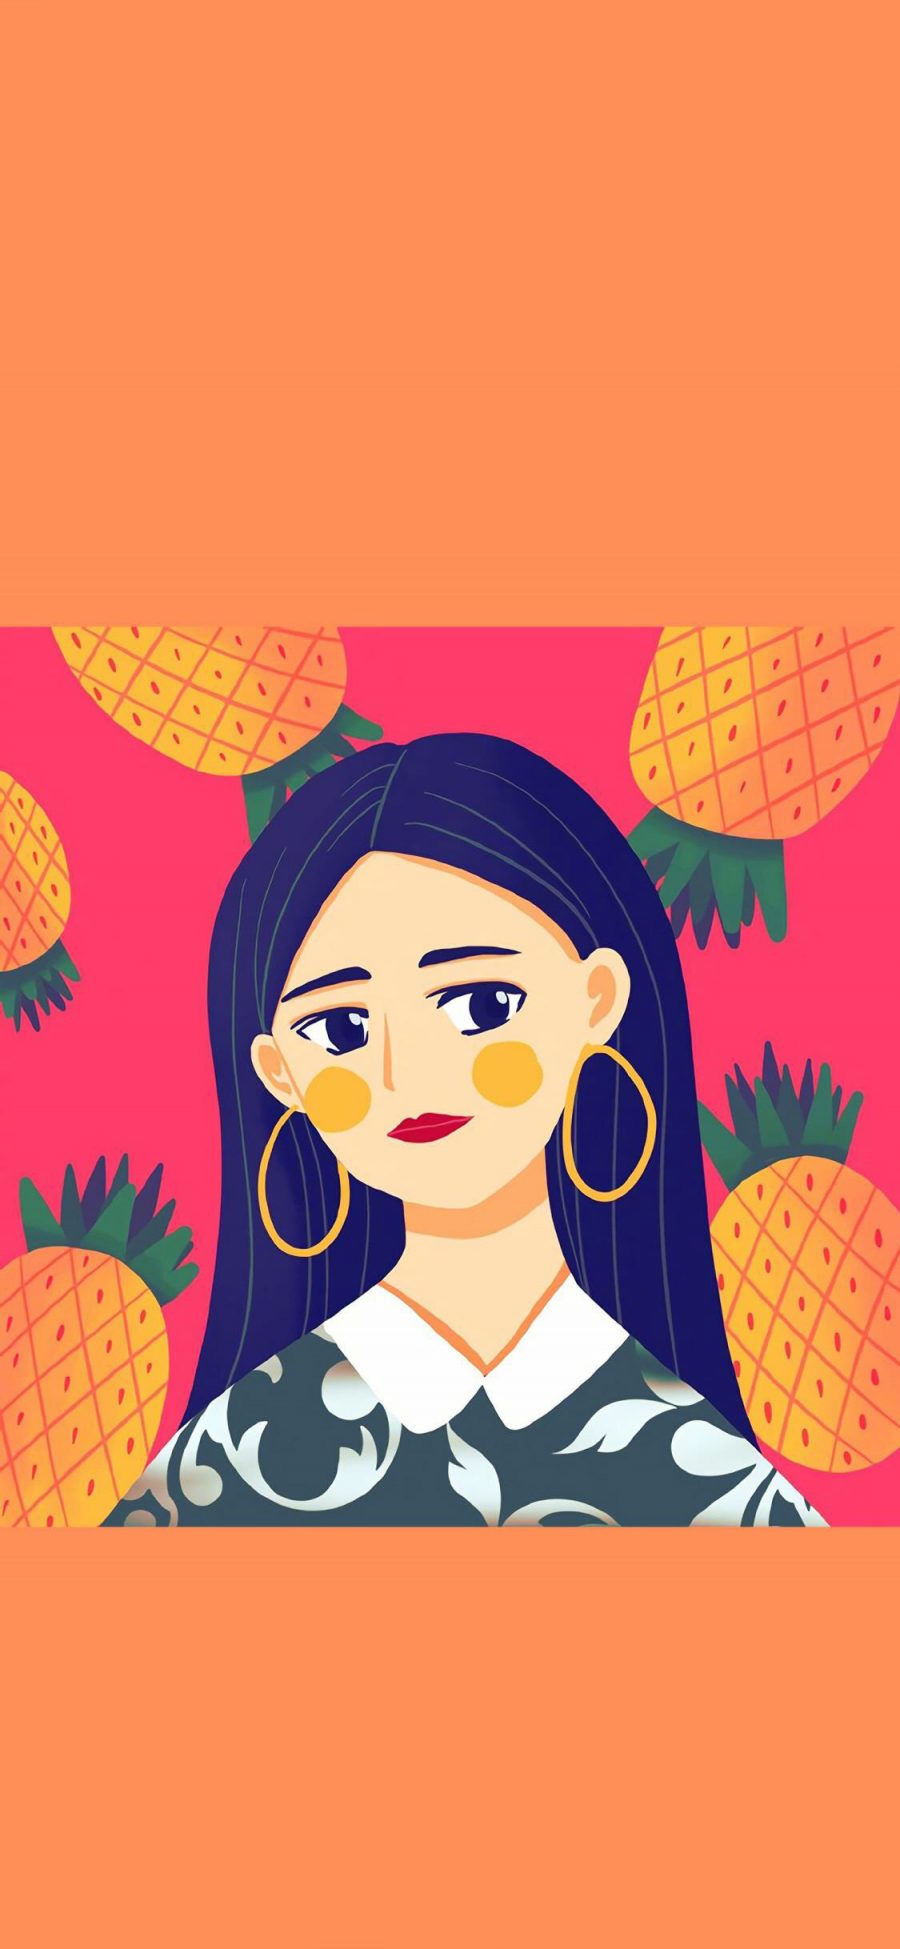 [2436×1125]插图 水果 女孩 菠萝 苹果手机动漫壁纸图片